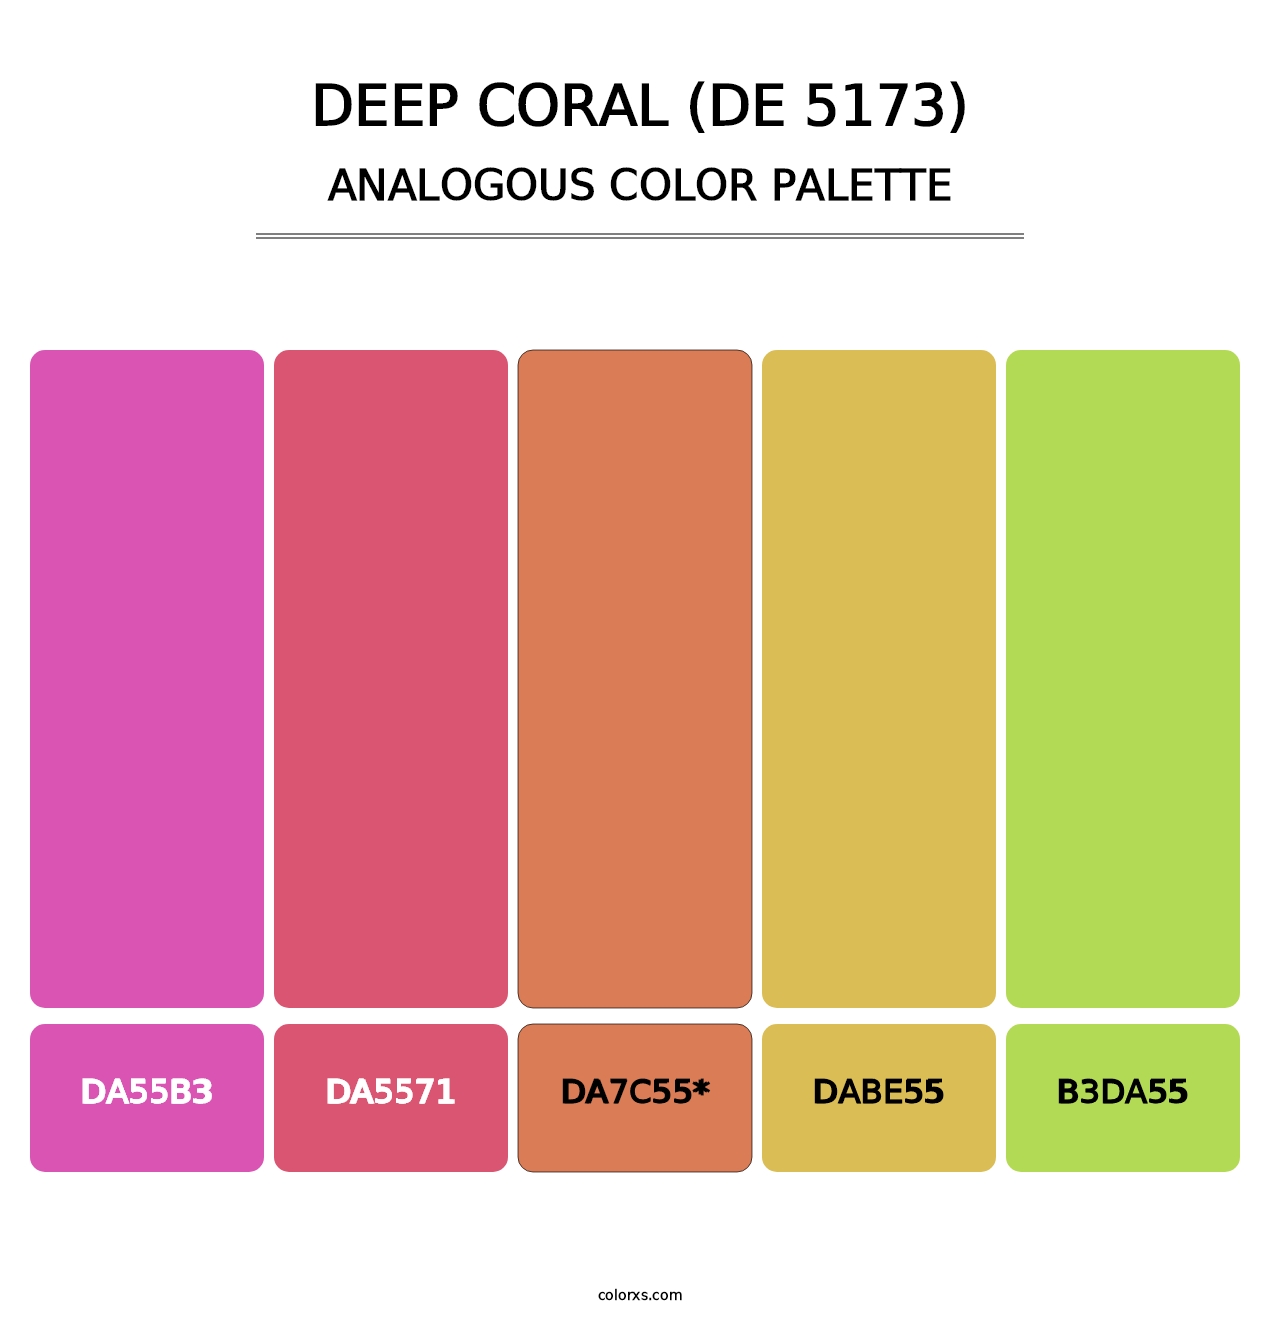 Deep Coral (DE 5173) - Analogous Color Palette